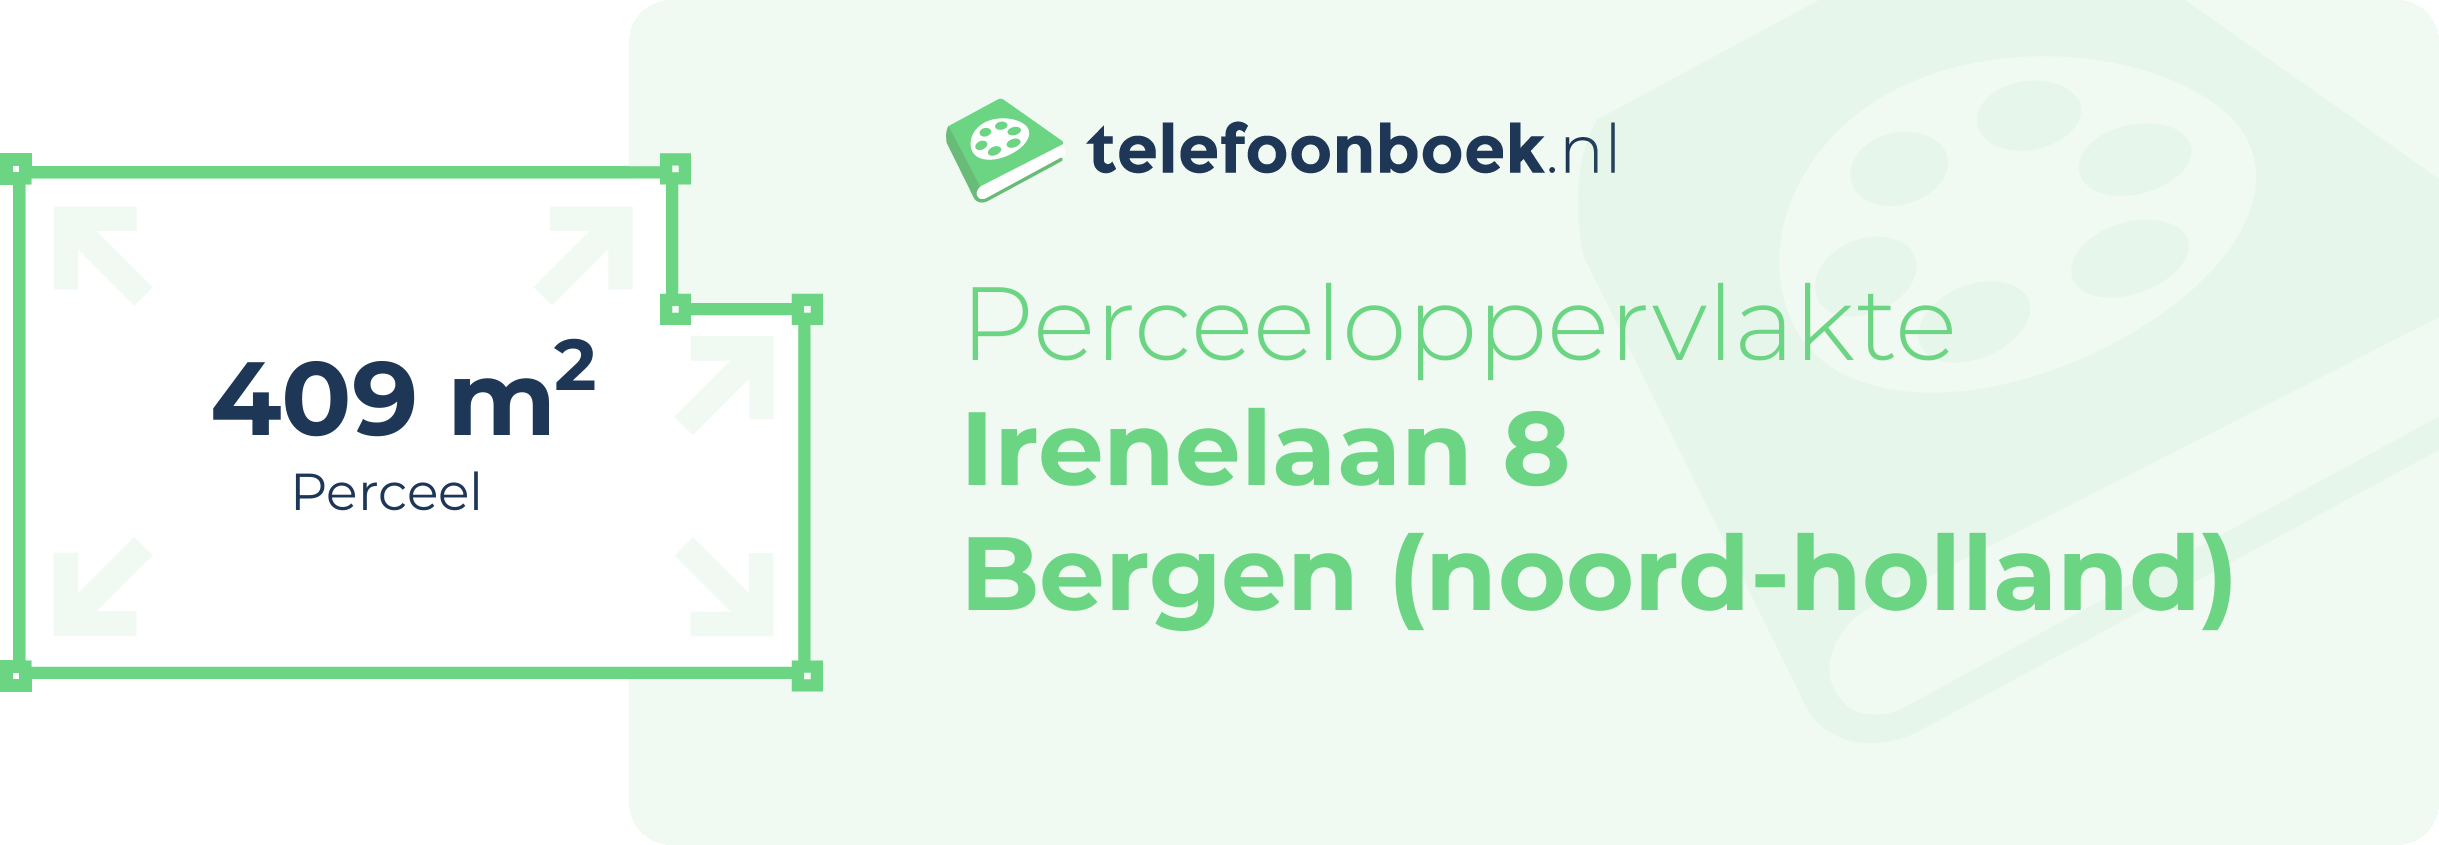 Perceeloppervlakte Irenelaan 8 Bergen (Noord-Holland)